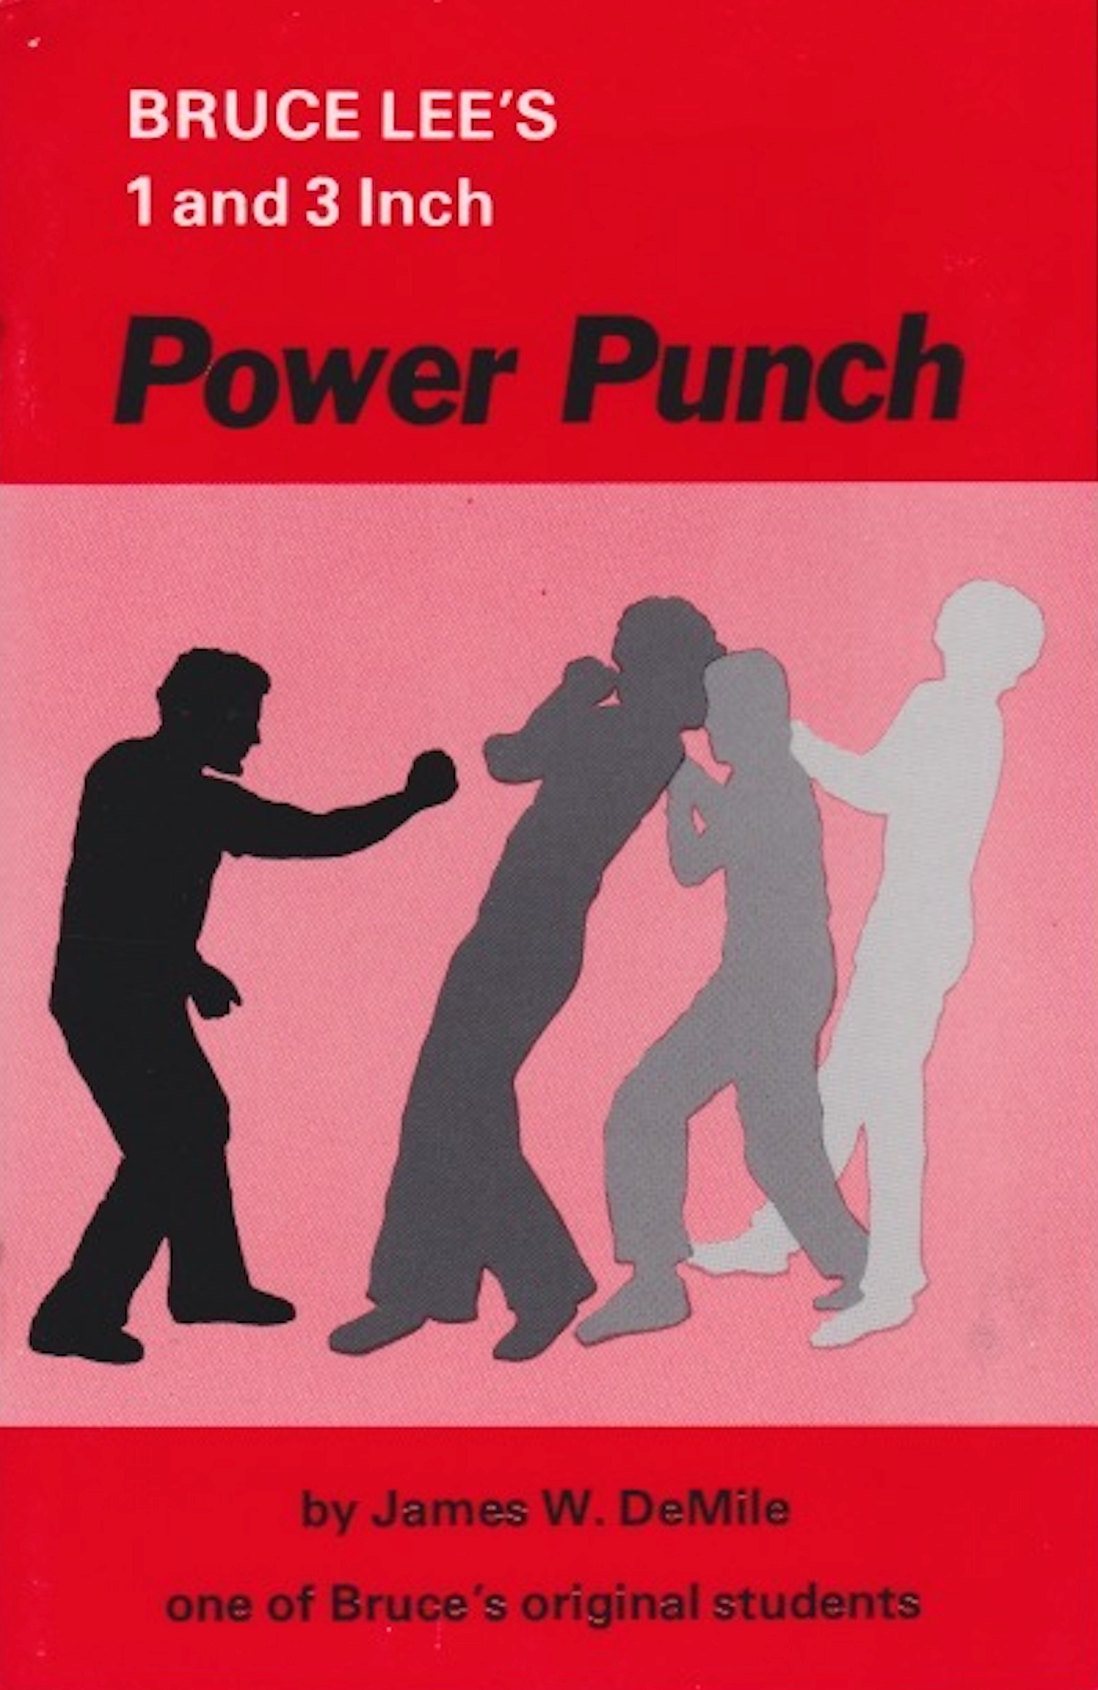 Libro Power Punch de Bruce Lee de 1 y 3 pulgadas por James DeMile